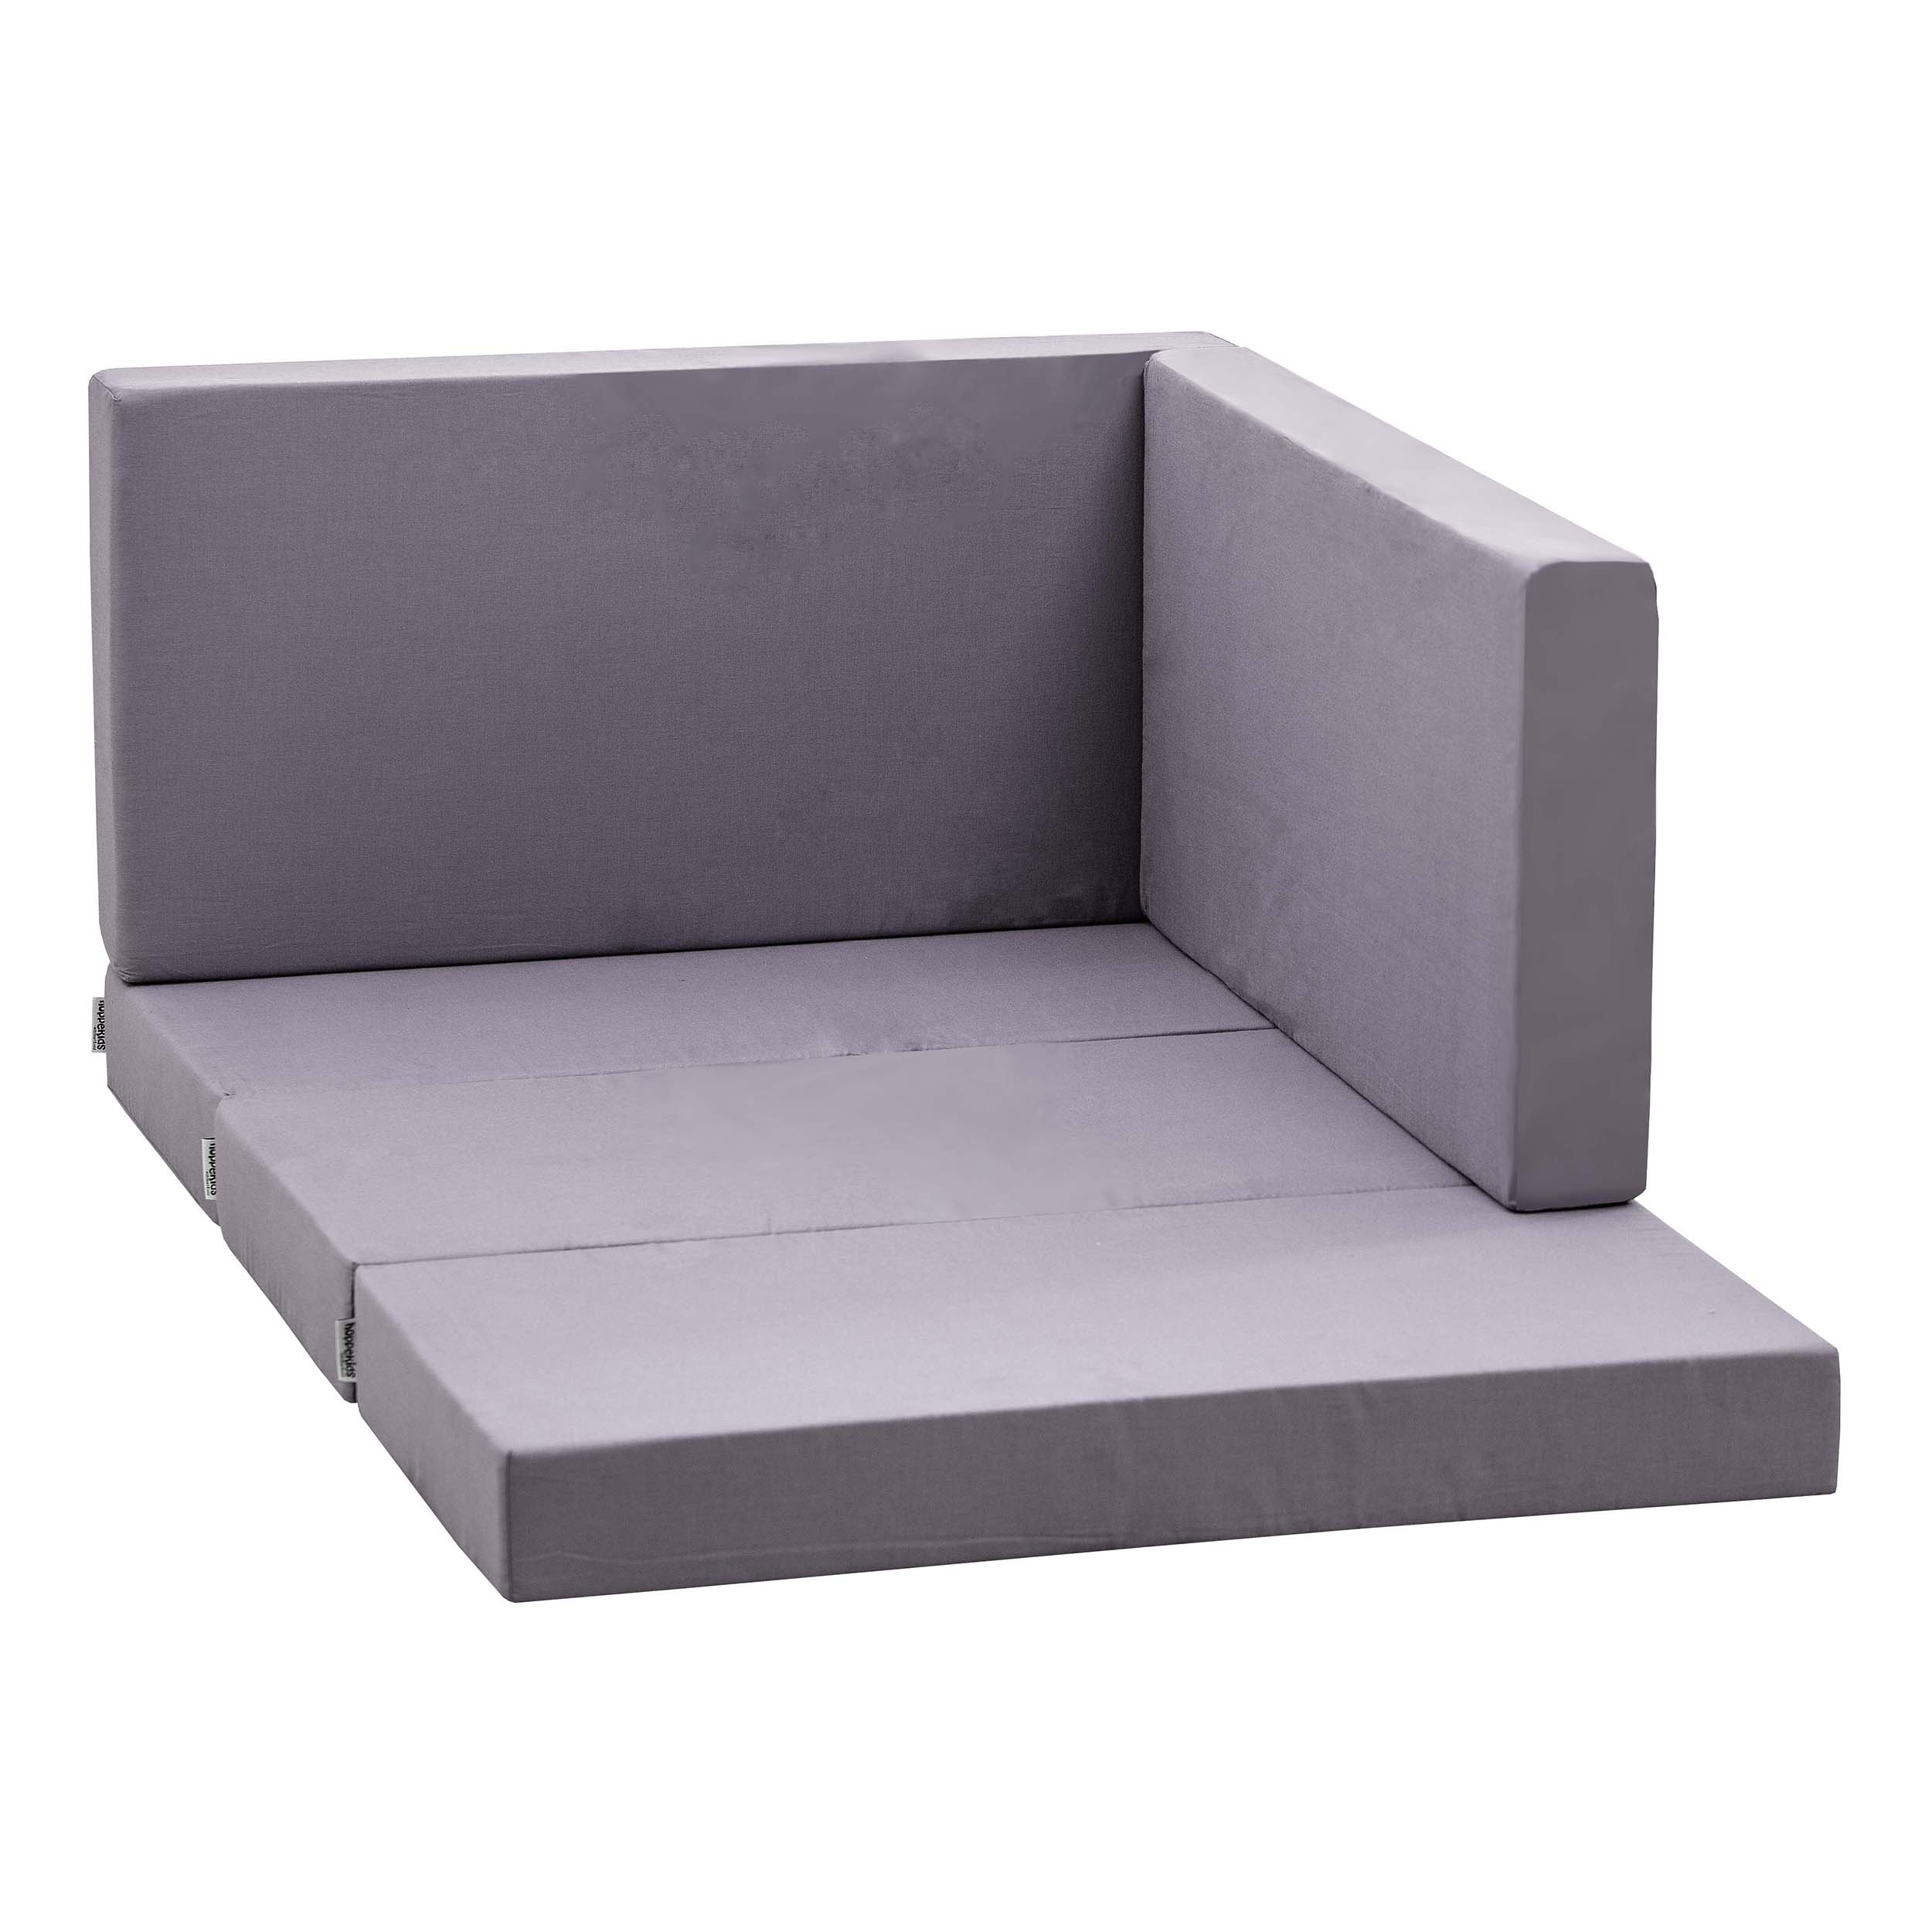 5-delt madrass til loungemodul i Granite Grey